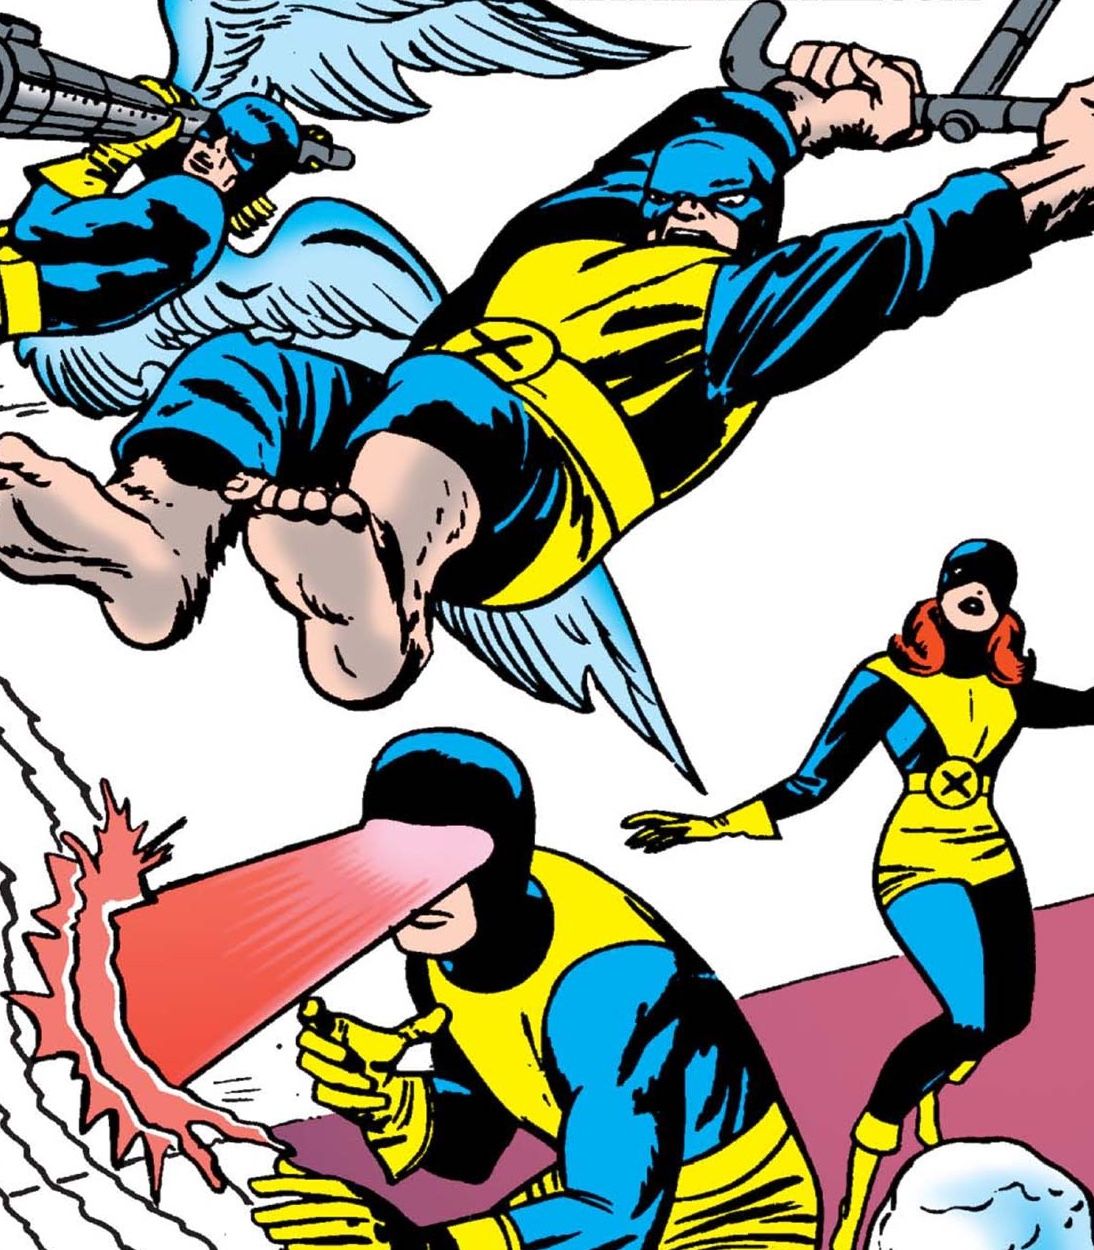 The Original X-Men team